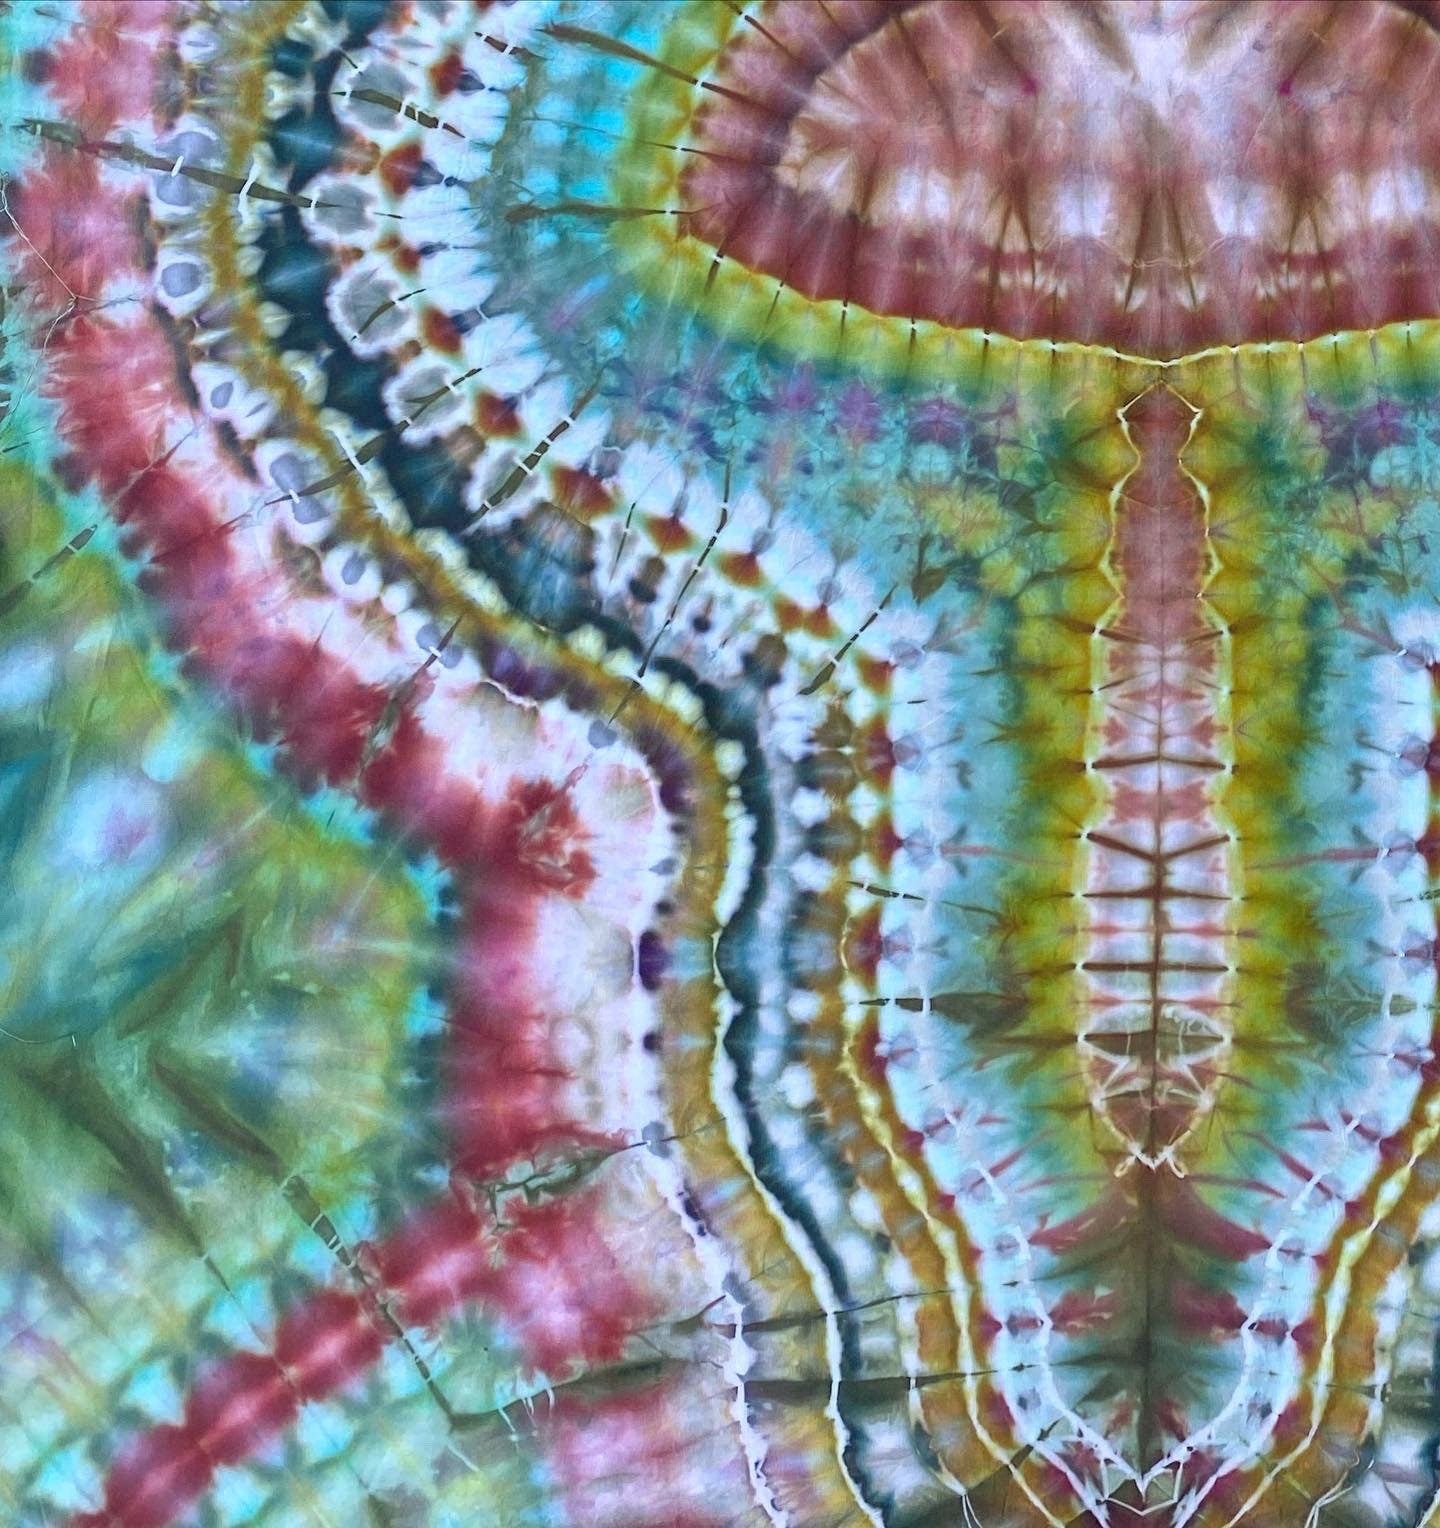 Mushroom Tie Dye Tapestry